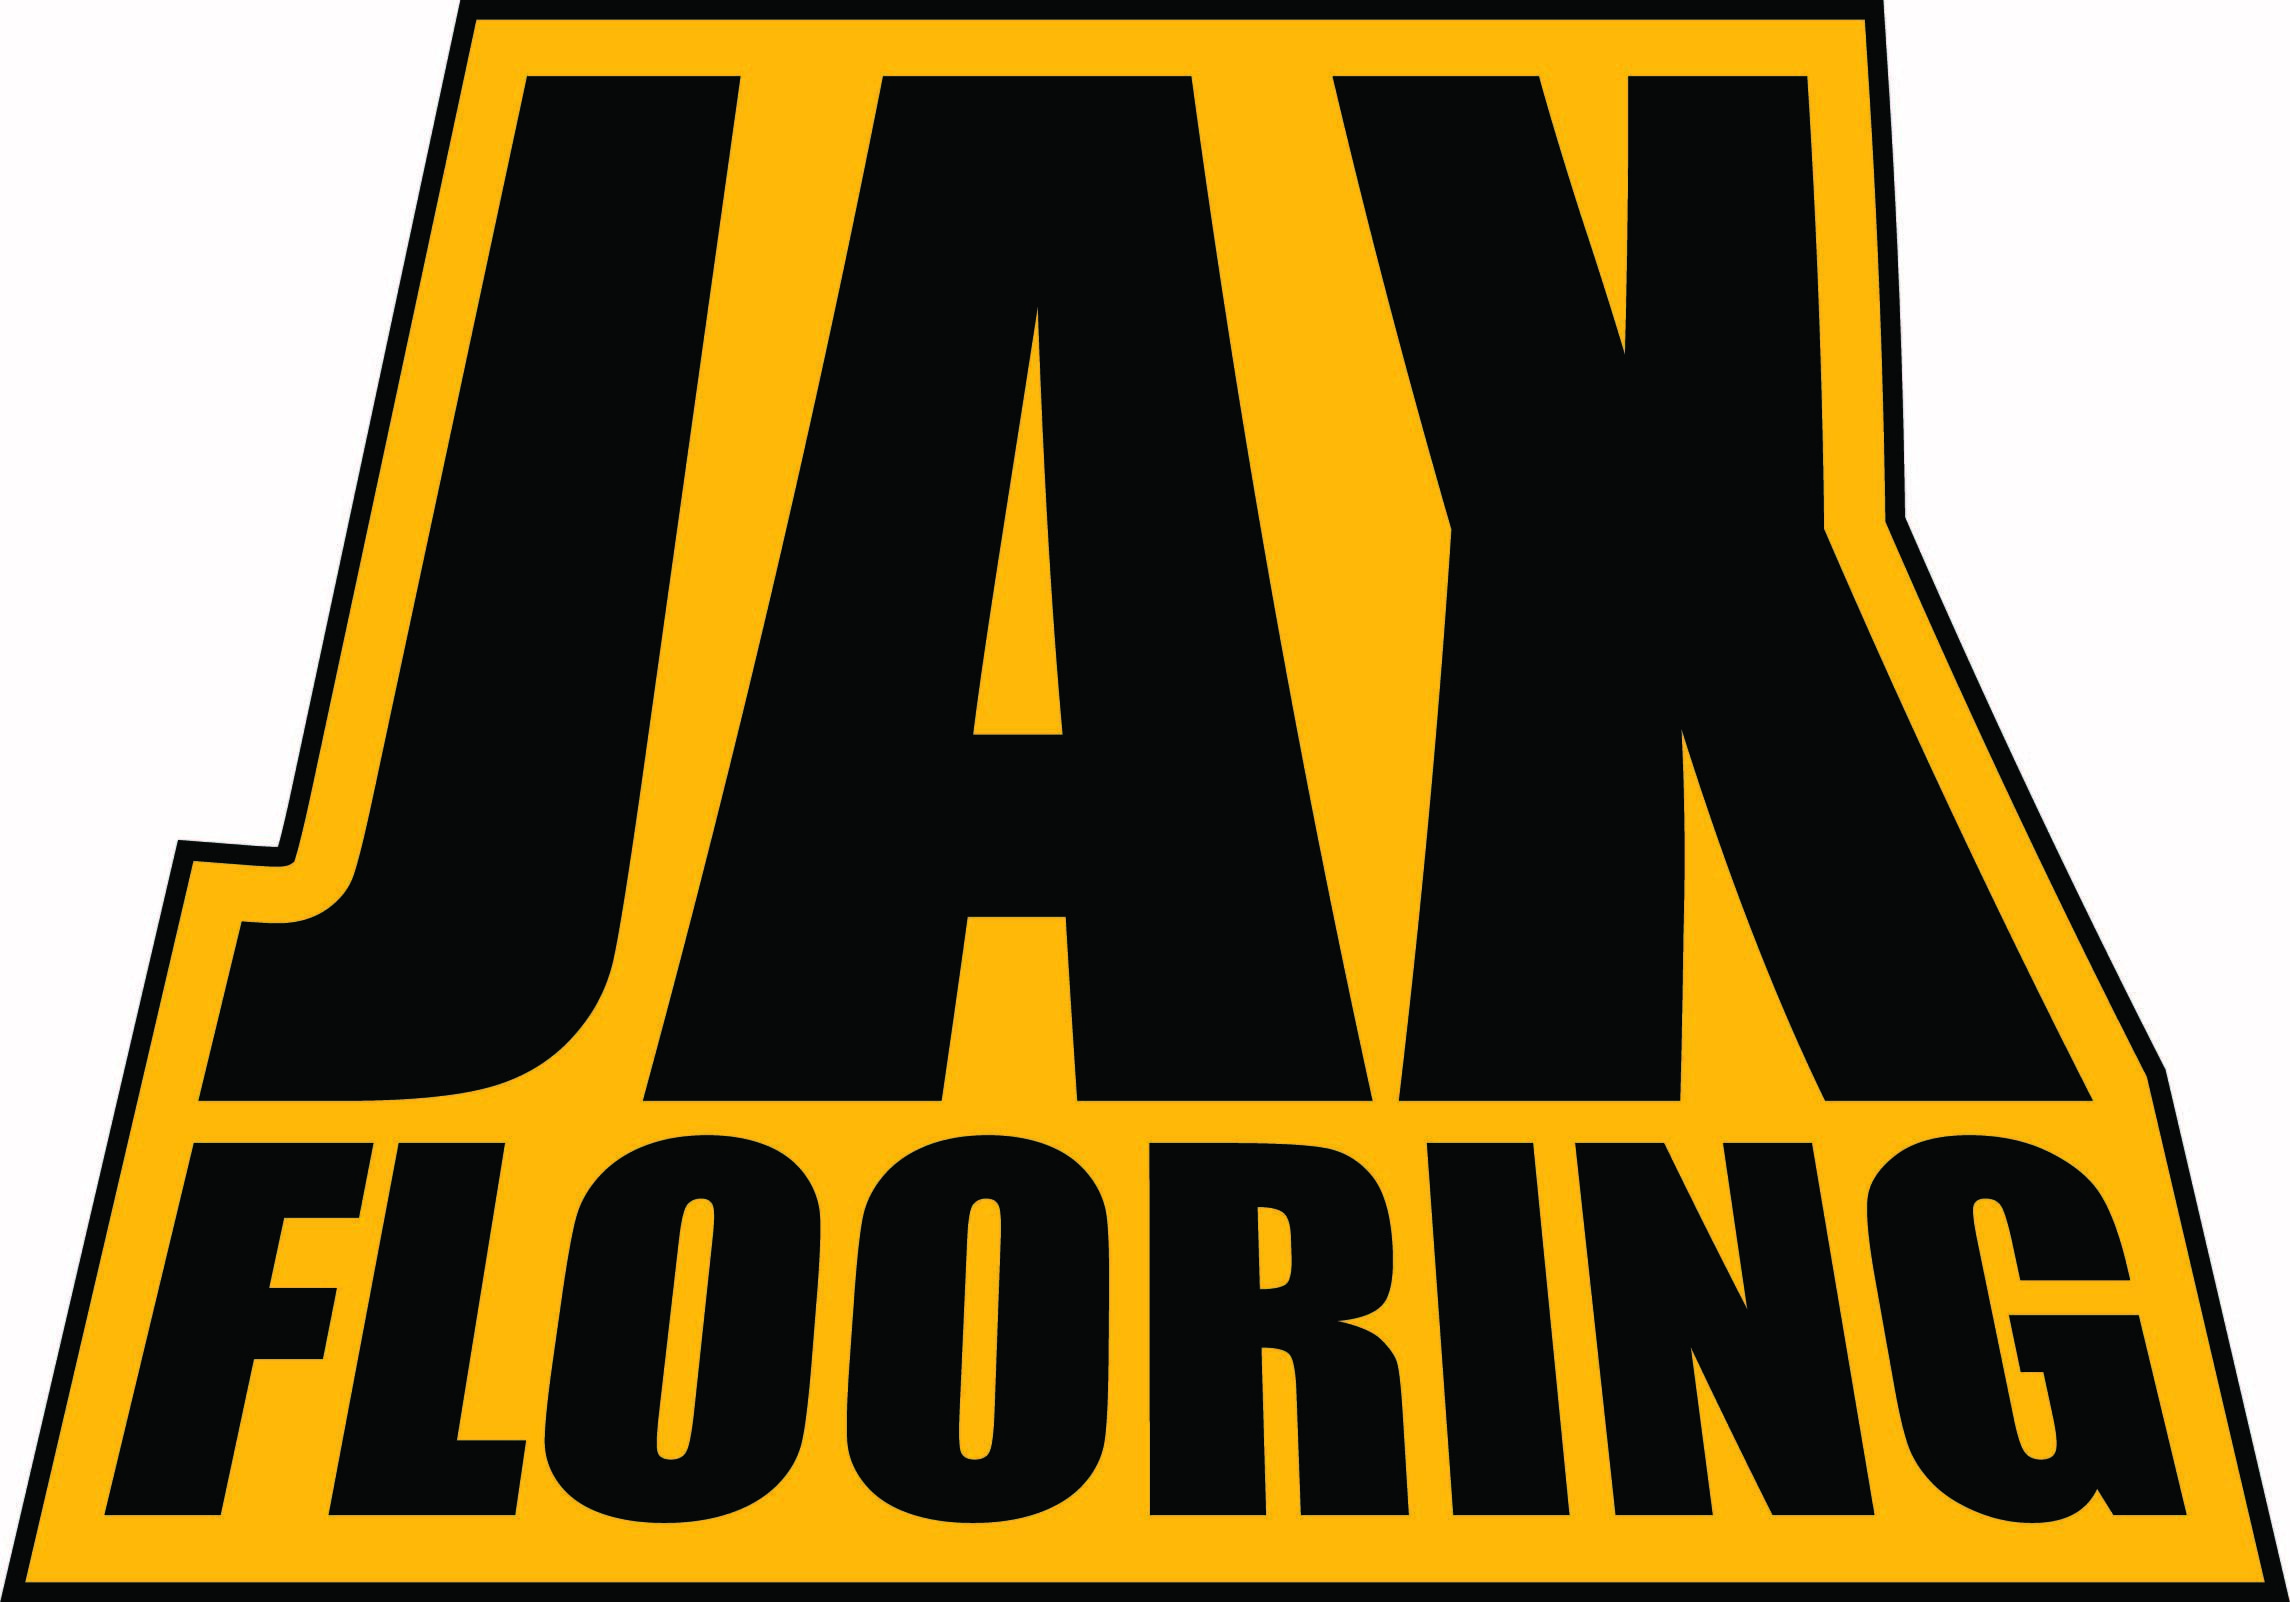 JAX FLOORING's logo